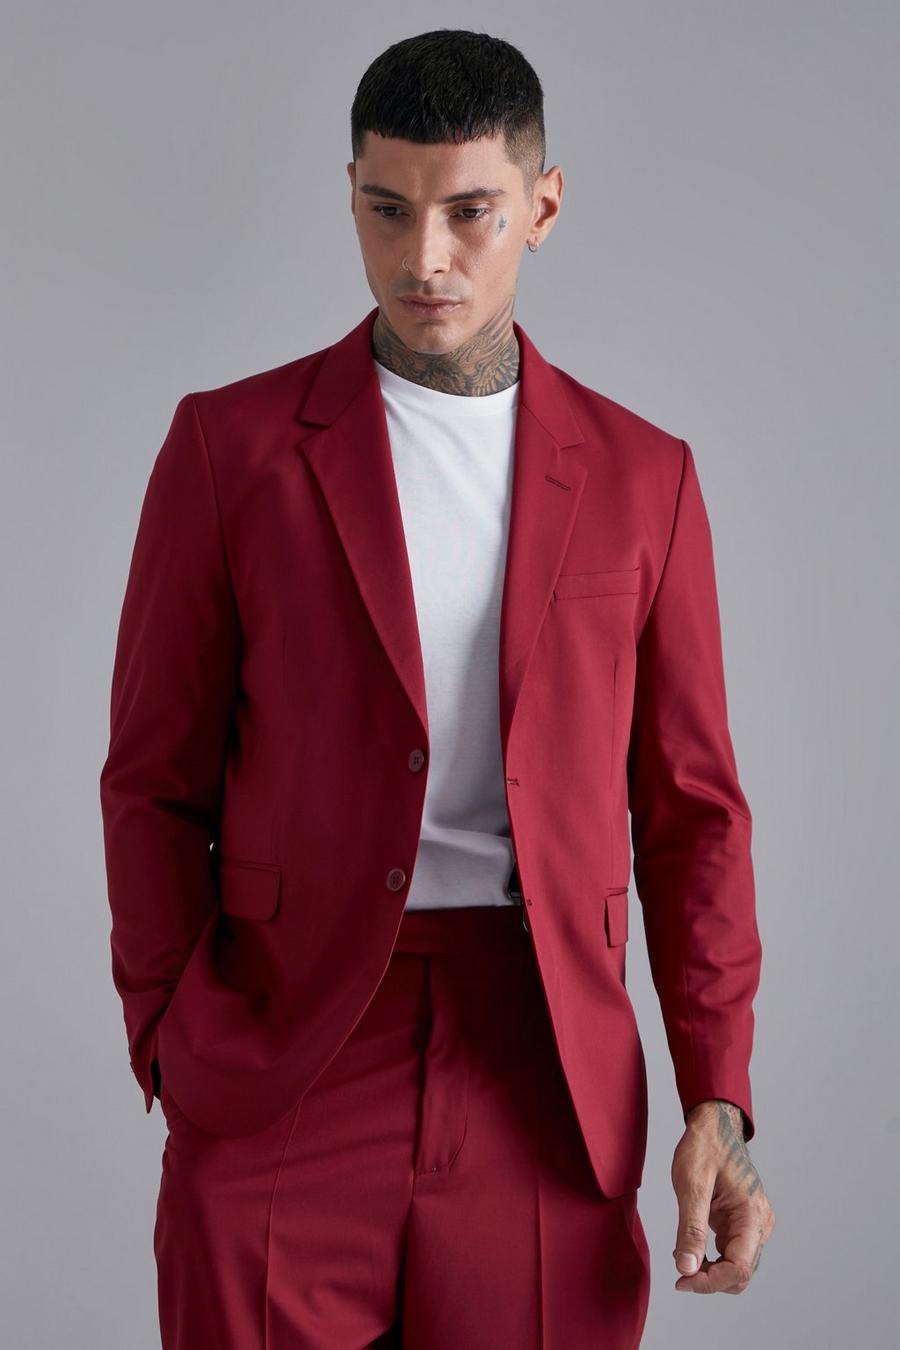 אדום בורגונדי rojo ז'קט חליפה בגזרה משוחררת עם רכיסה אחת